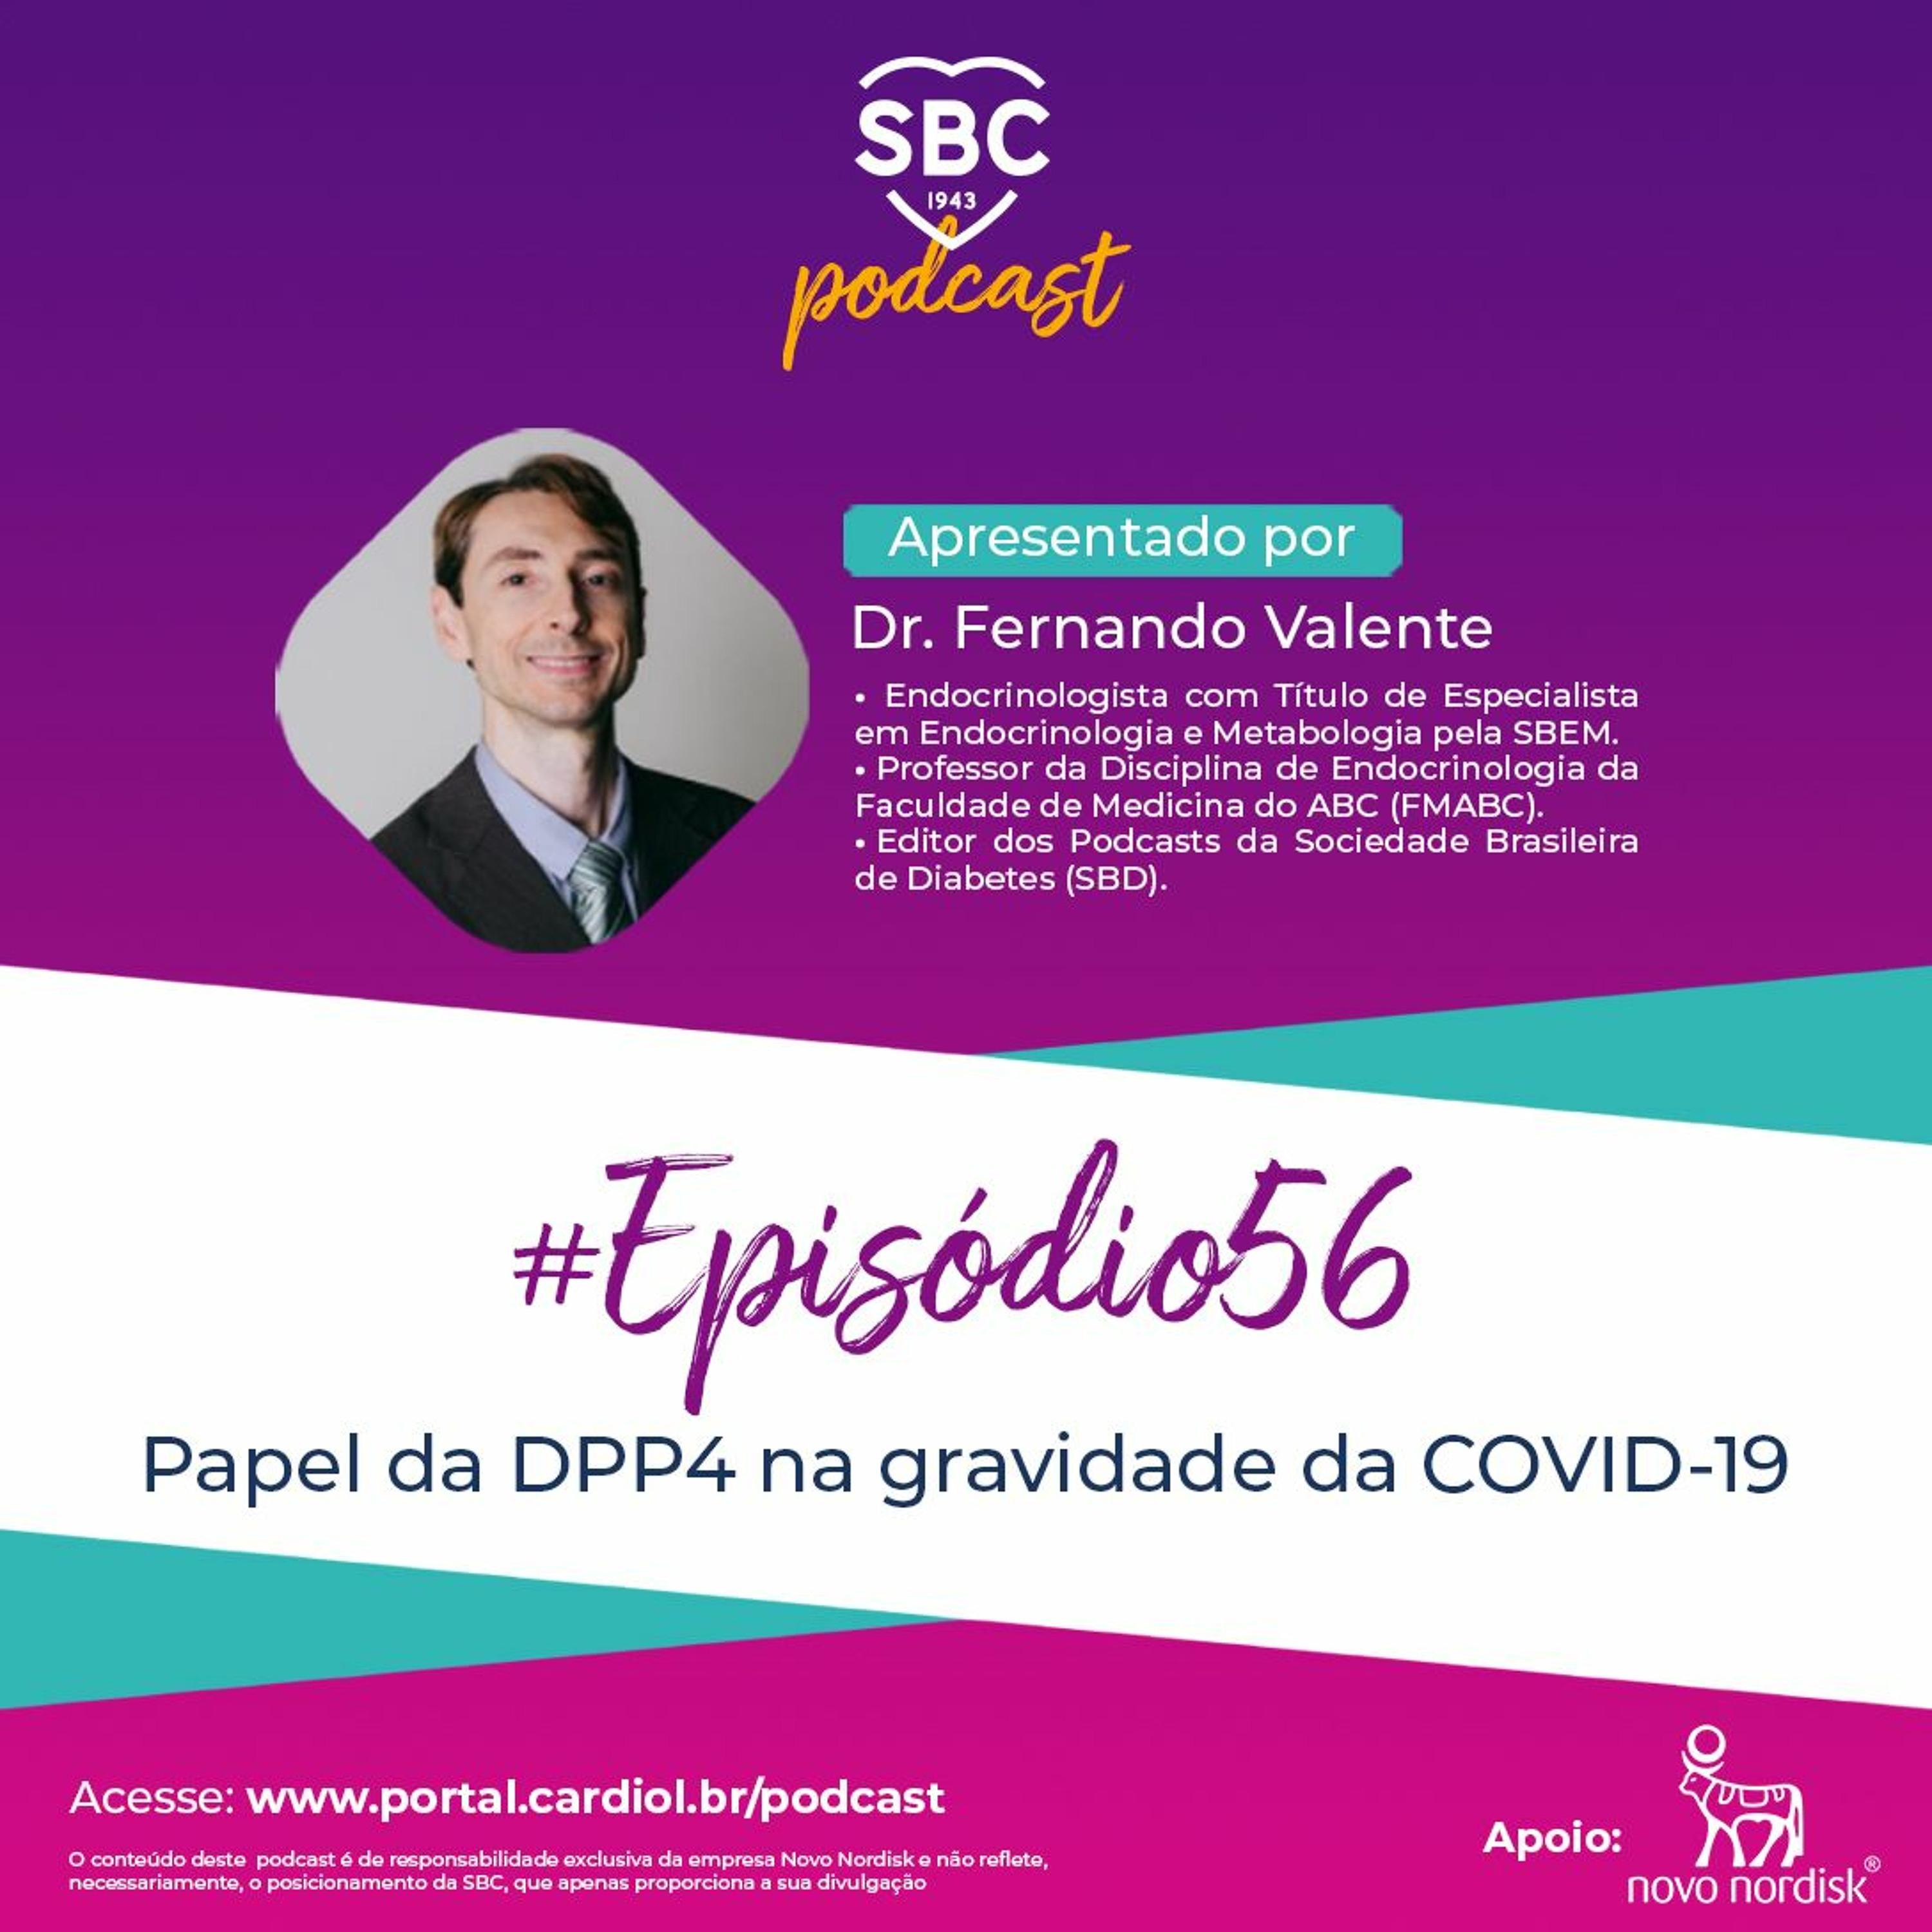 Neste episódio, o Dr. Fernando Valente abordará o Papel da DPP4 na gravidade da COVID-19.